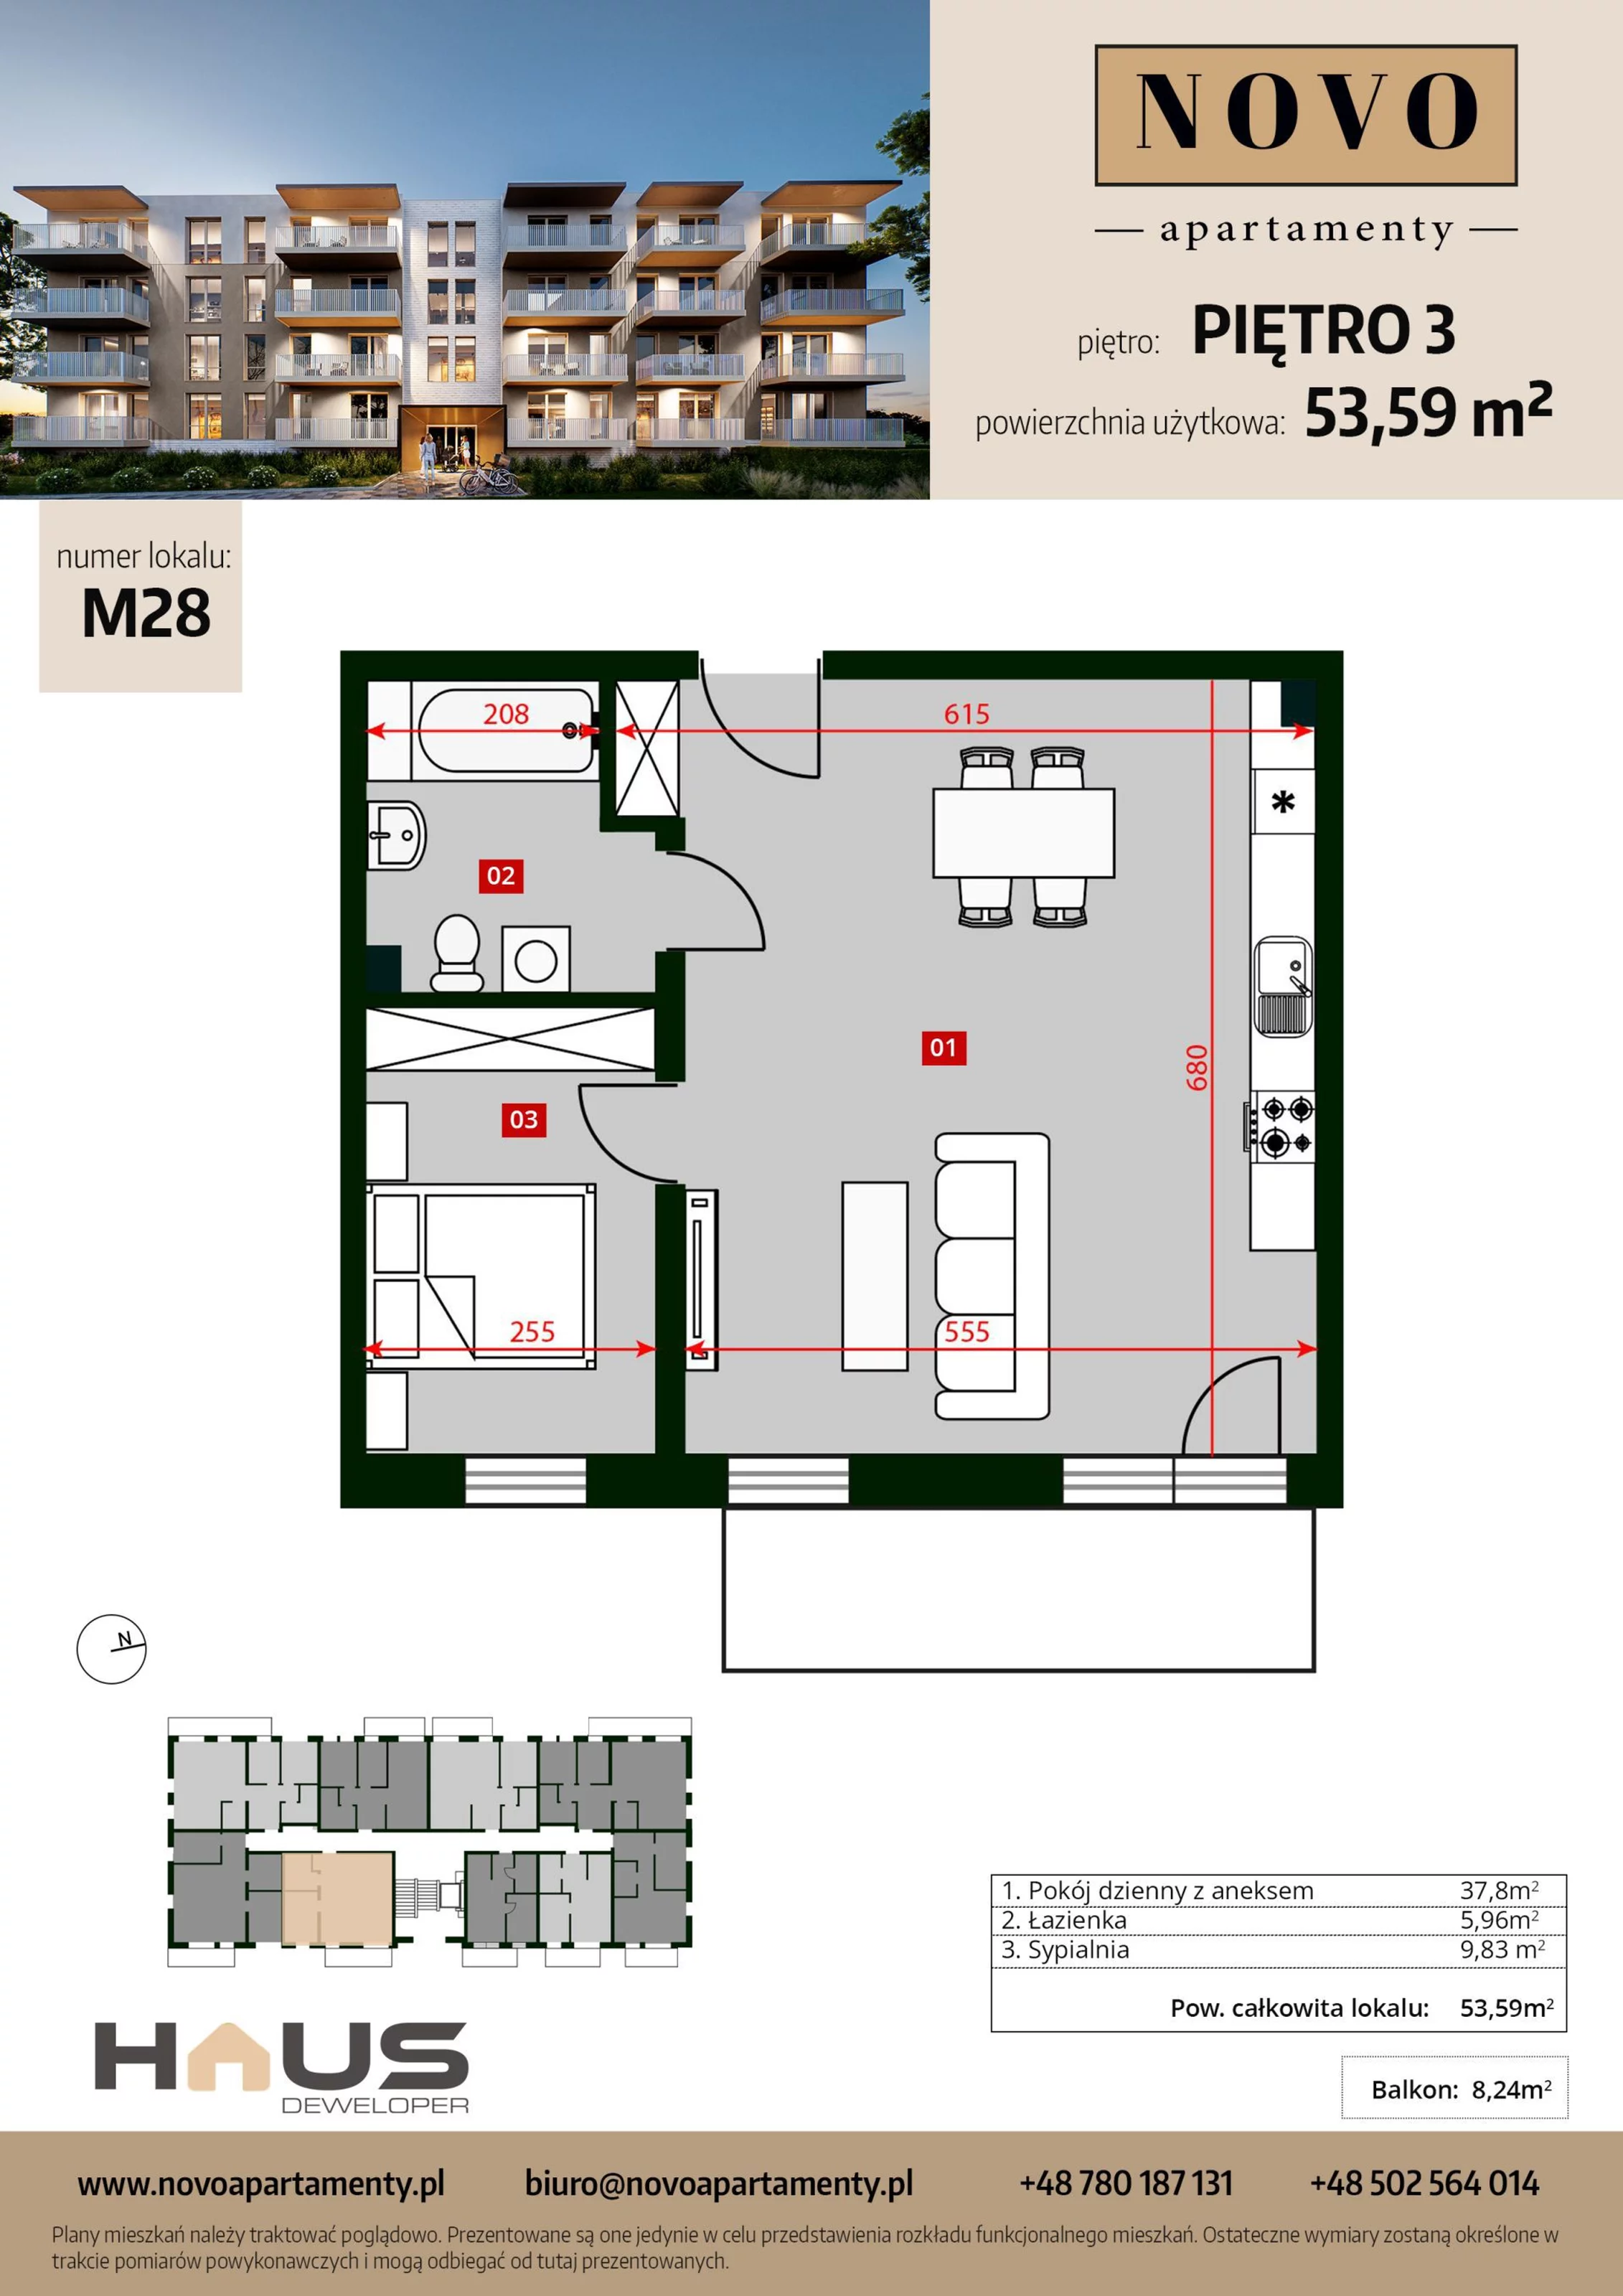 Mieszkanie 53,59 m², piętro 3, oferta nr M28, Apartamenty NOVO, Nysa, ul. Franciszkańska